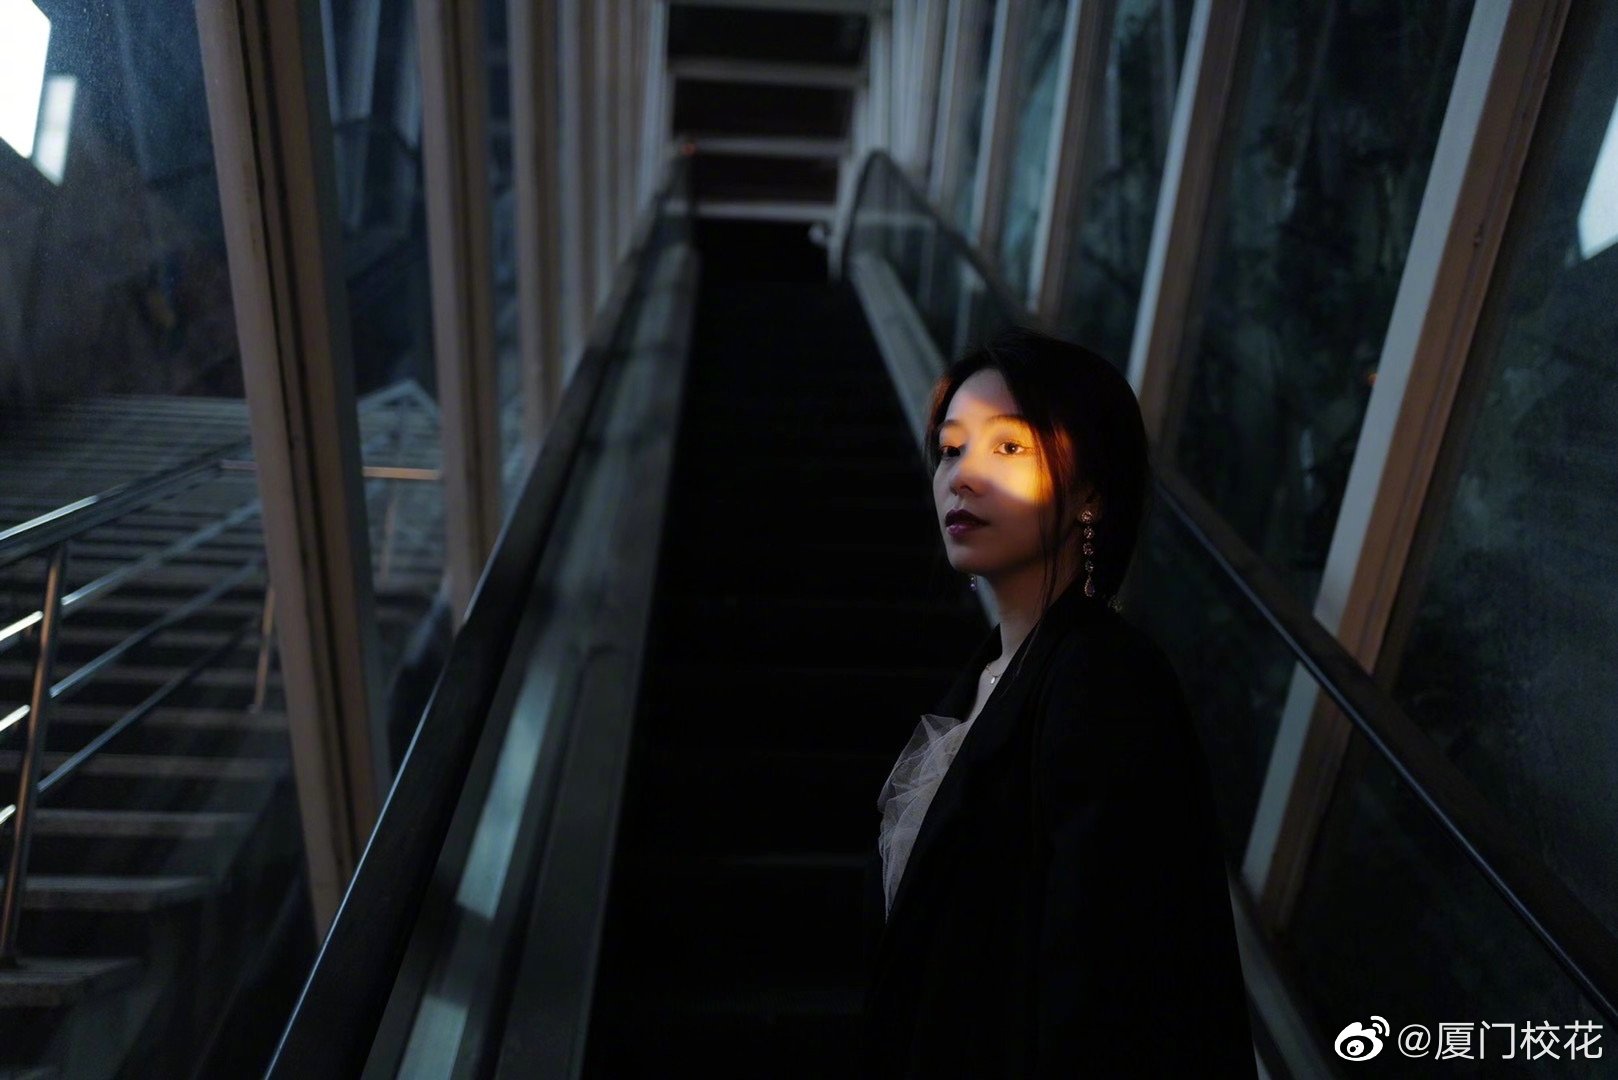 她叫杨凯雯，就读于东北电力大学，身高172cm，很有气质的女生